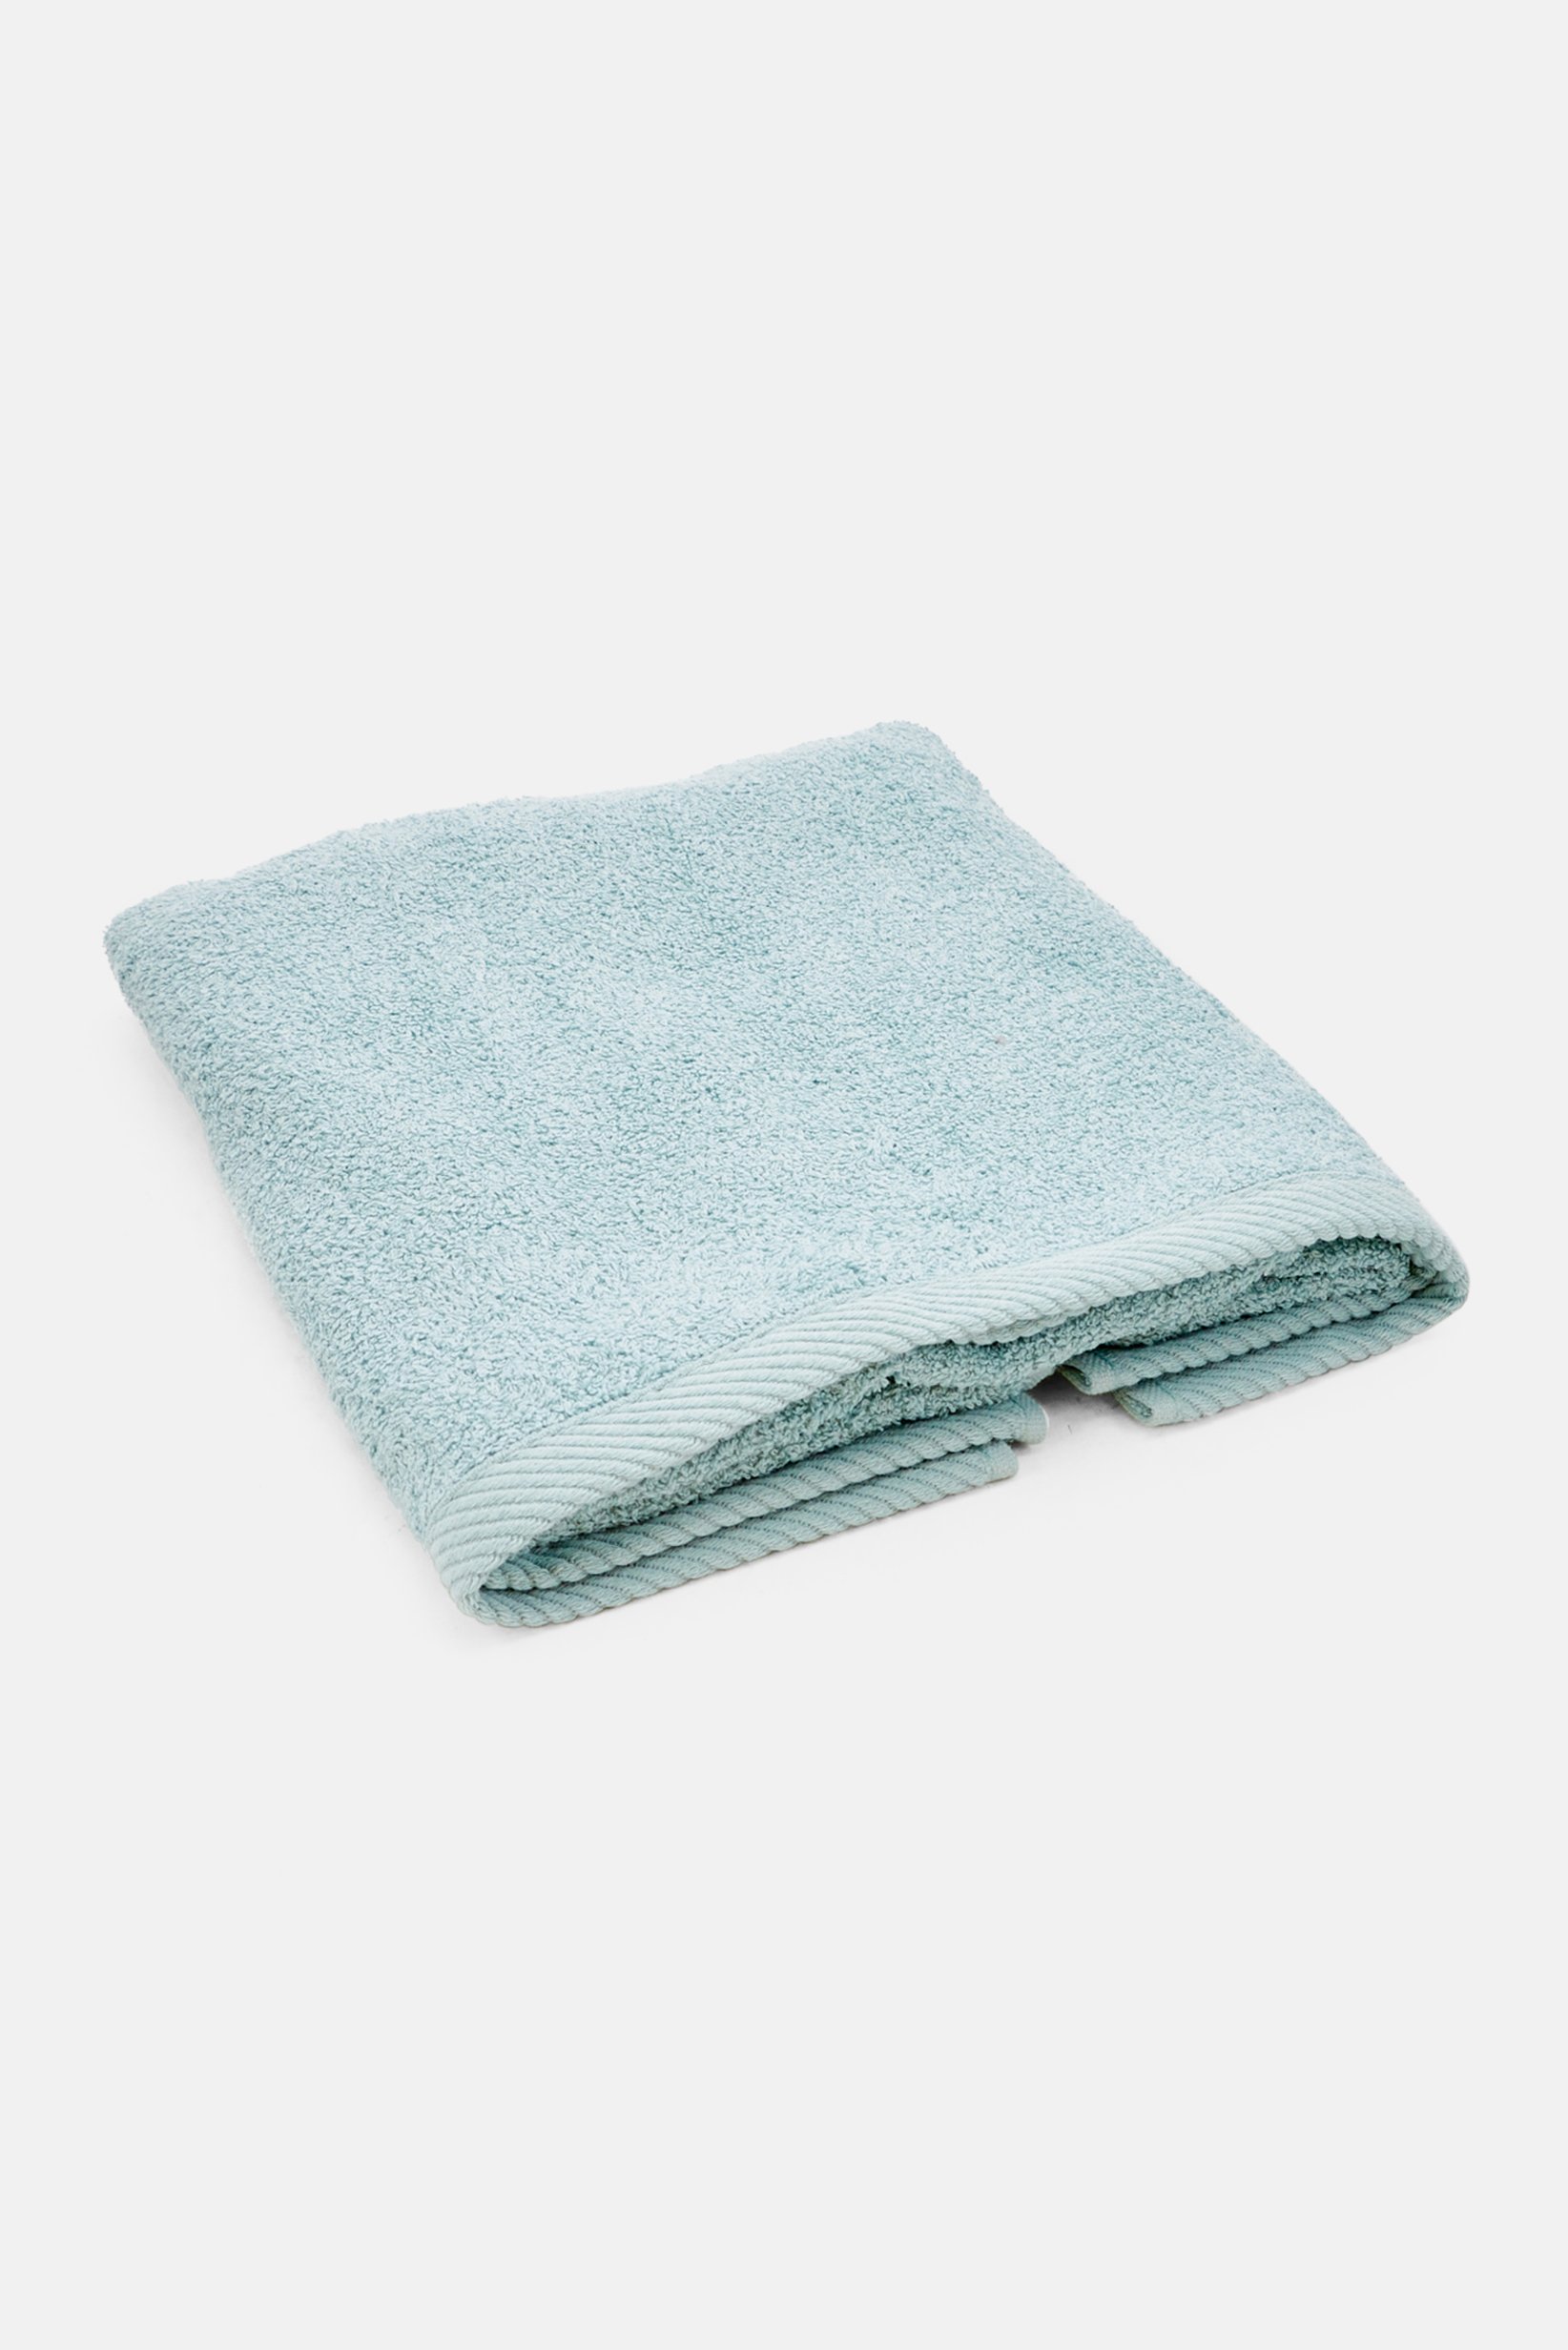 Kela Plain Face Towel 50 X 100cm, Mint Blue